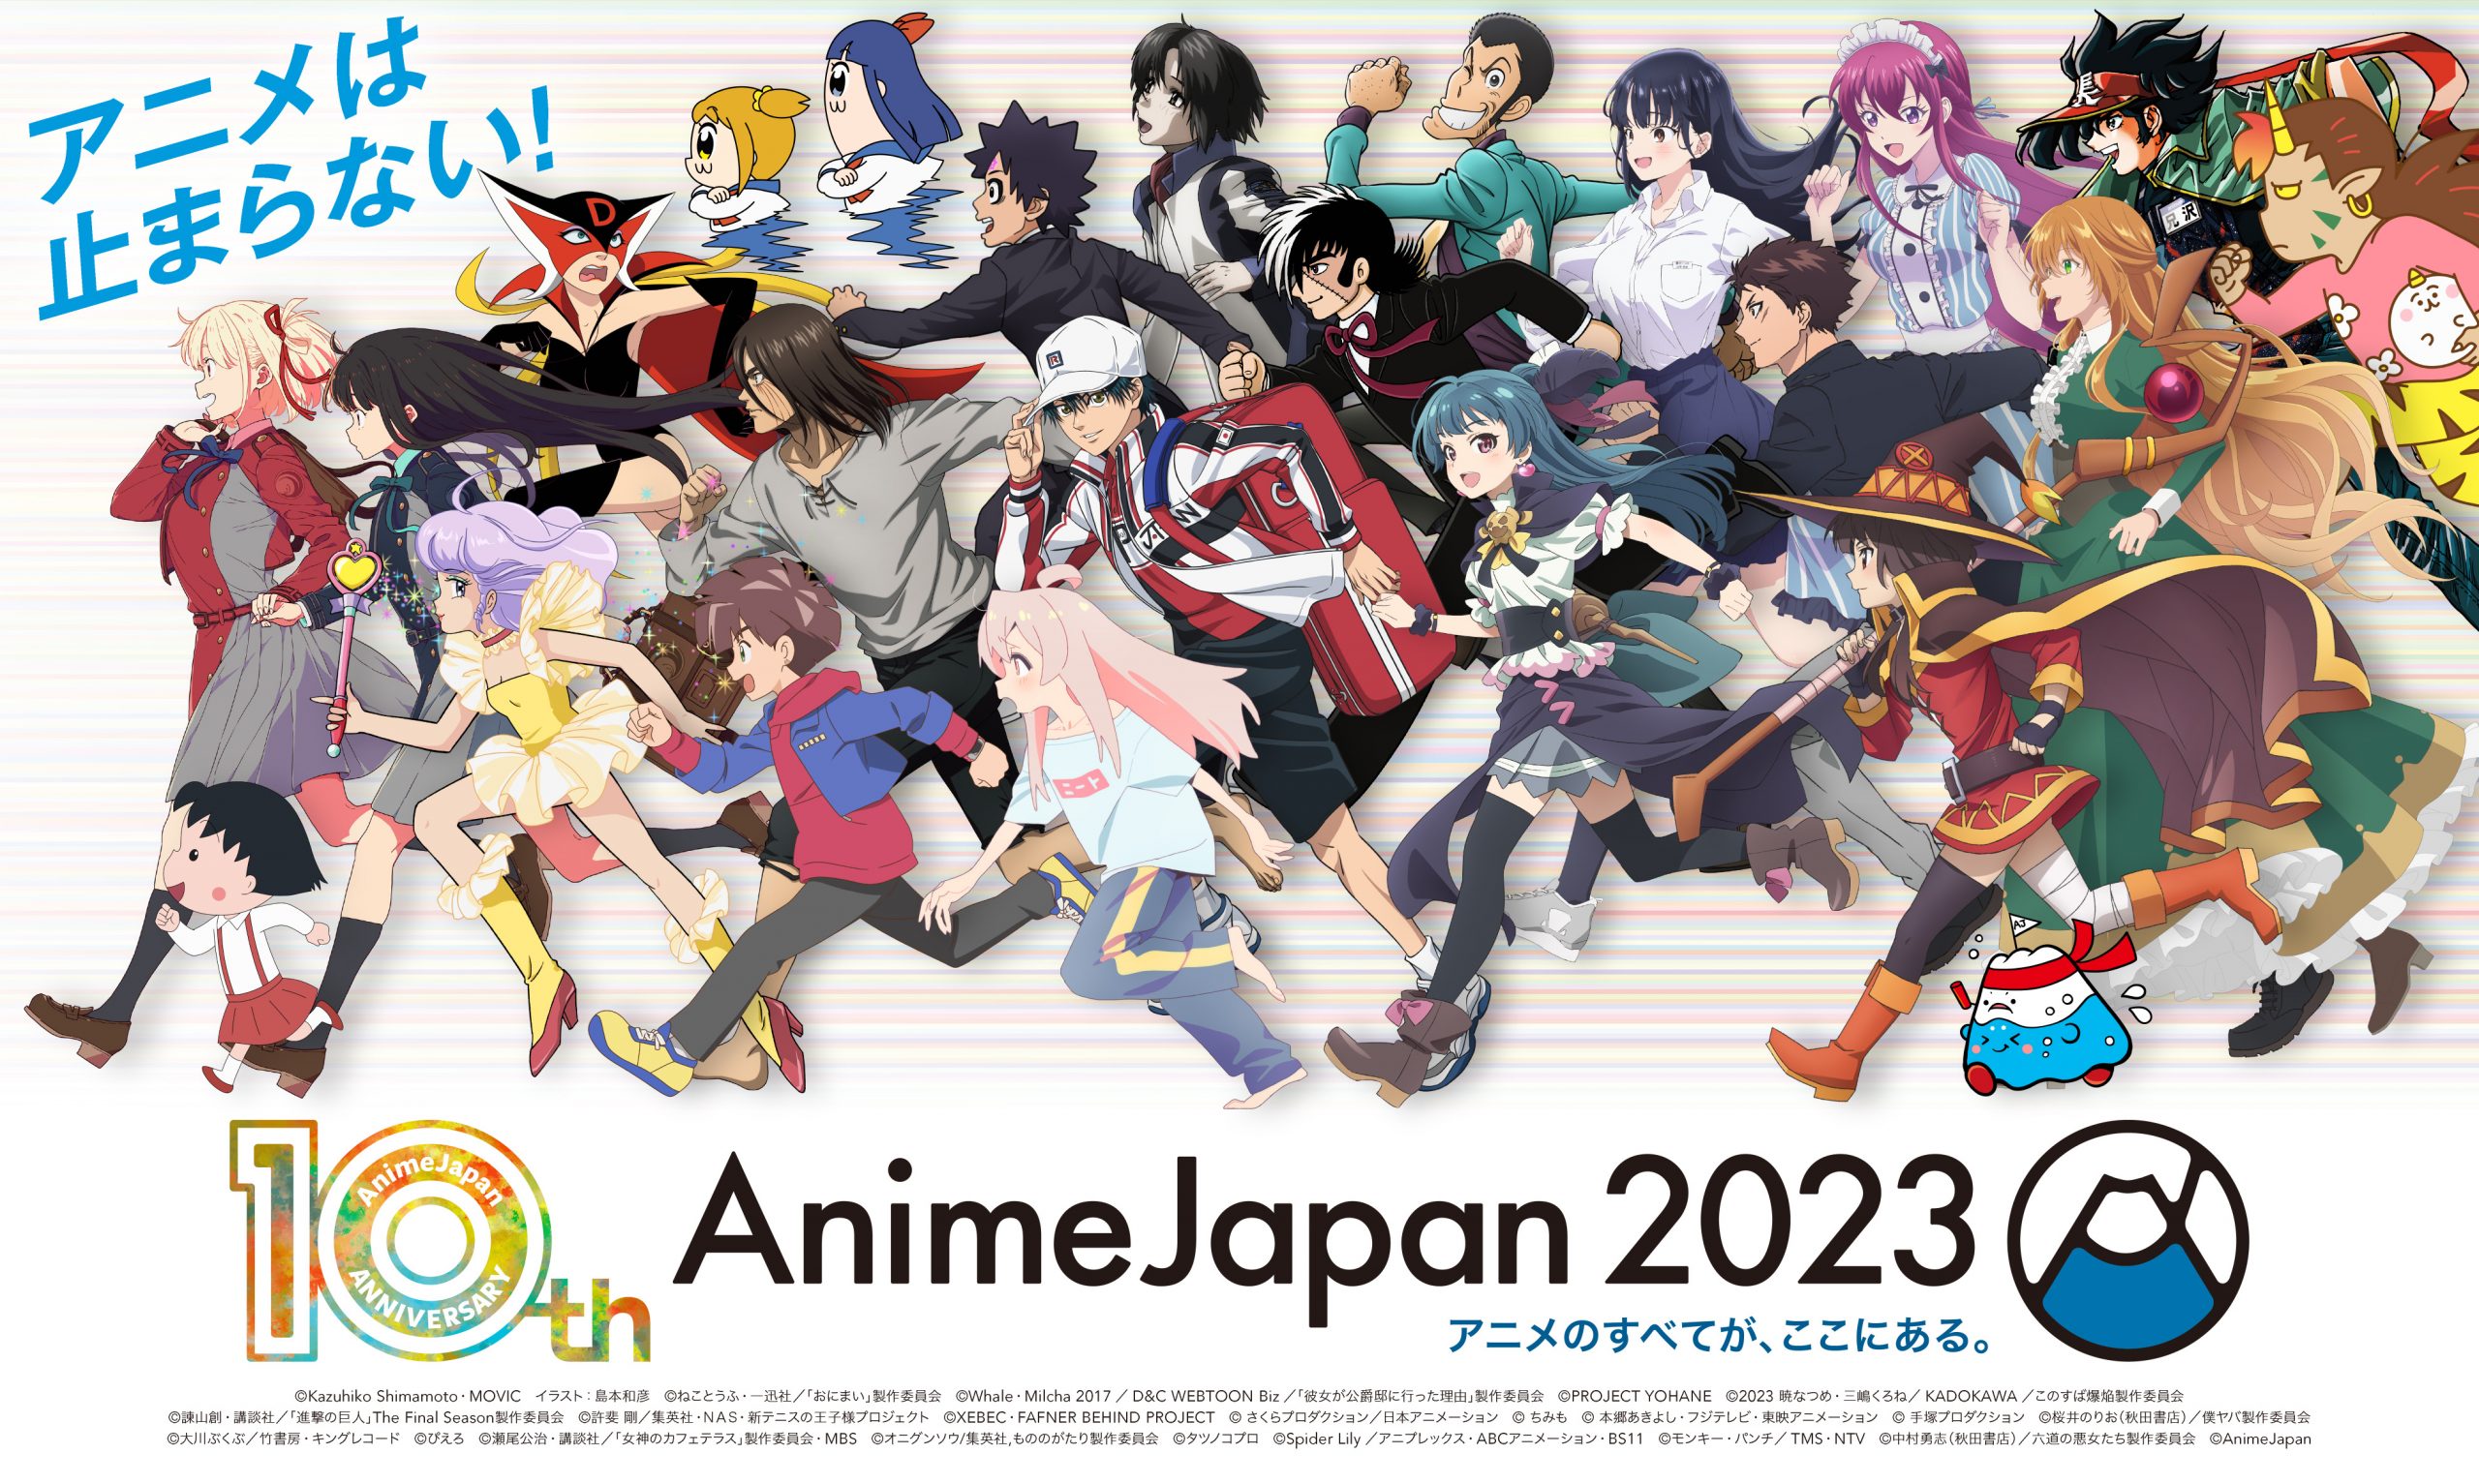 日本のアニメ総合データベース「アニメ大全」 ｜ 世界最大級のアニメイベント「AnimeJapan 2023」 全46ステージ情報を一挙解禁